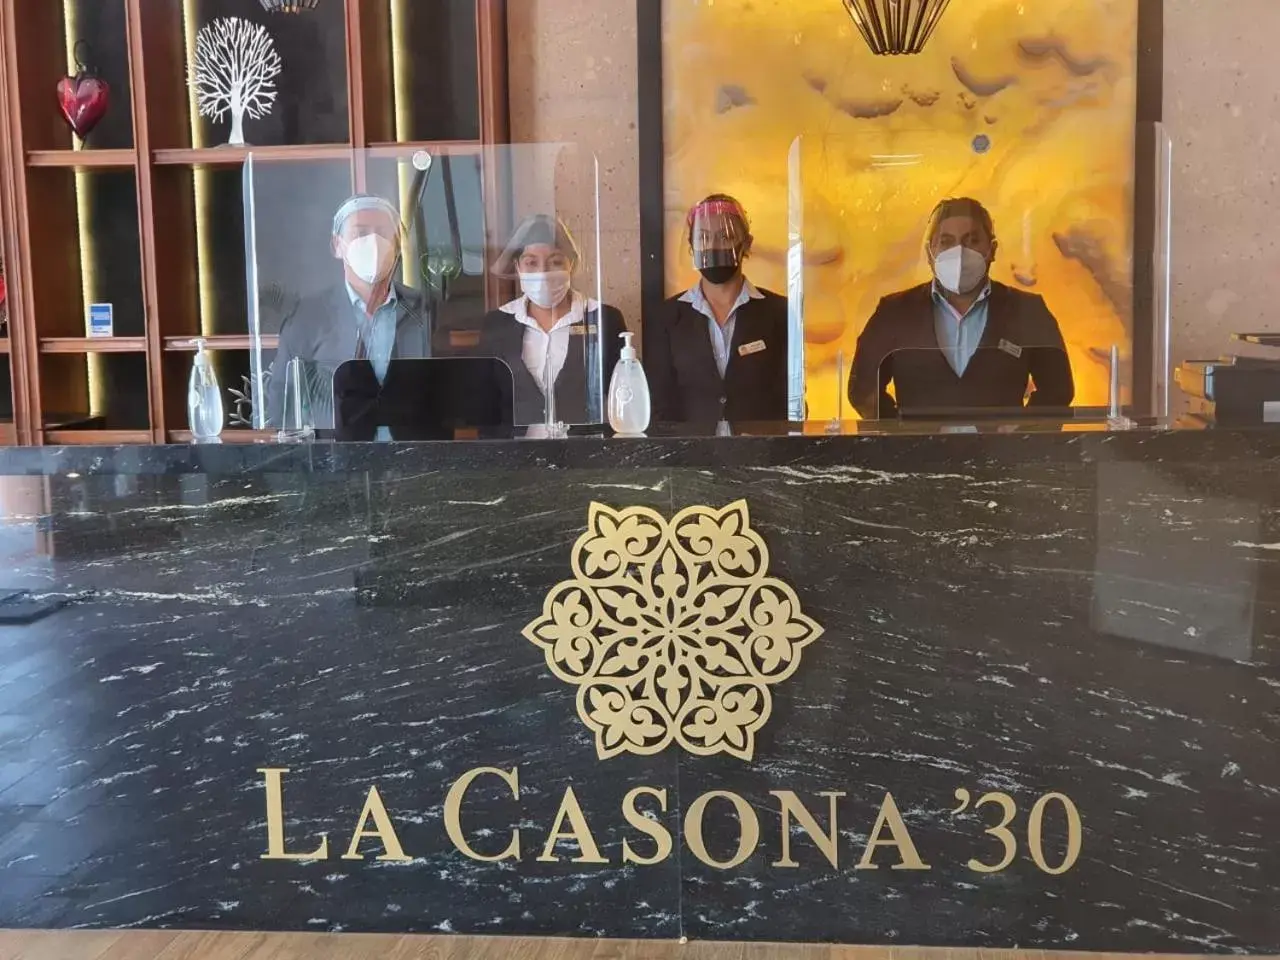 Staff in Hotel La Casona 30